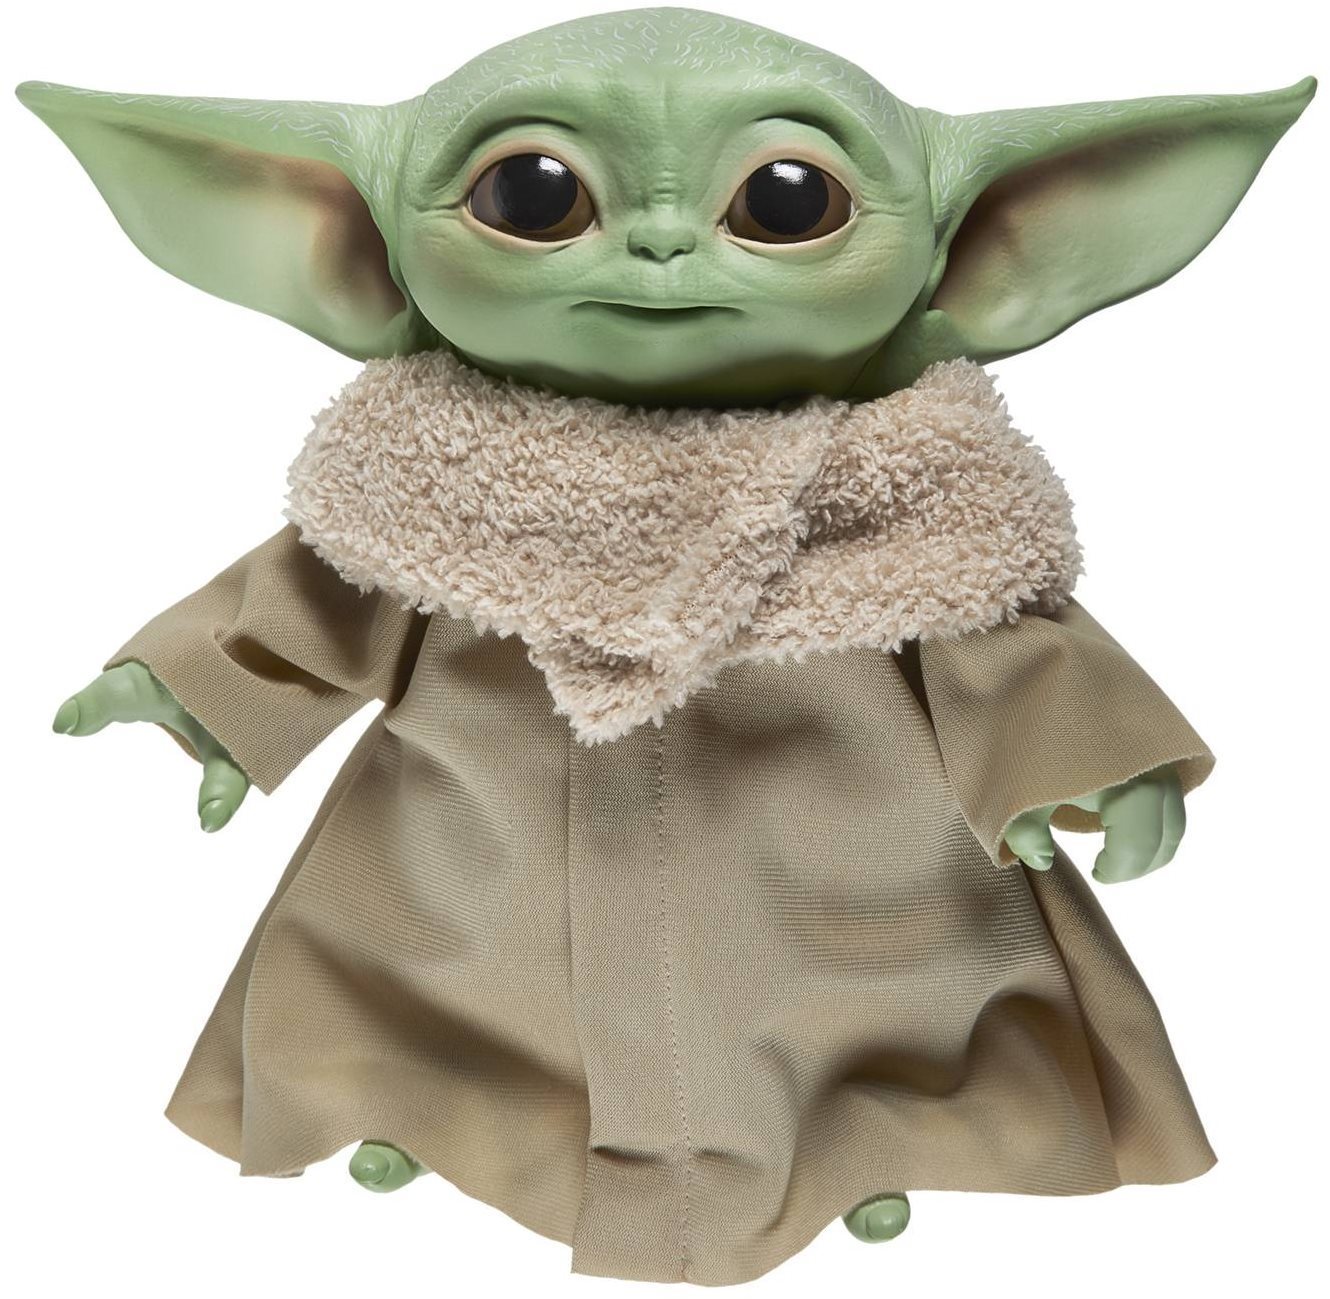 Star Wars Baby Yoda beszélő figura 19 cm